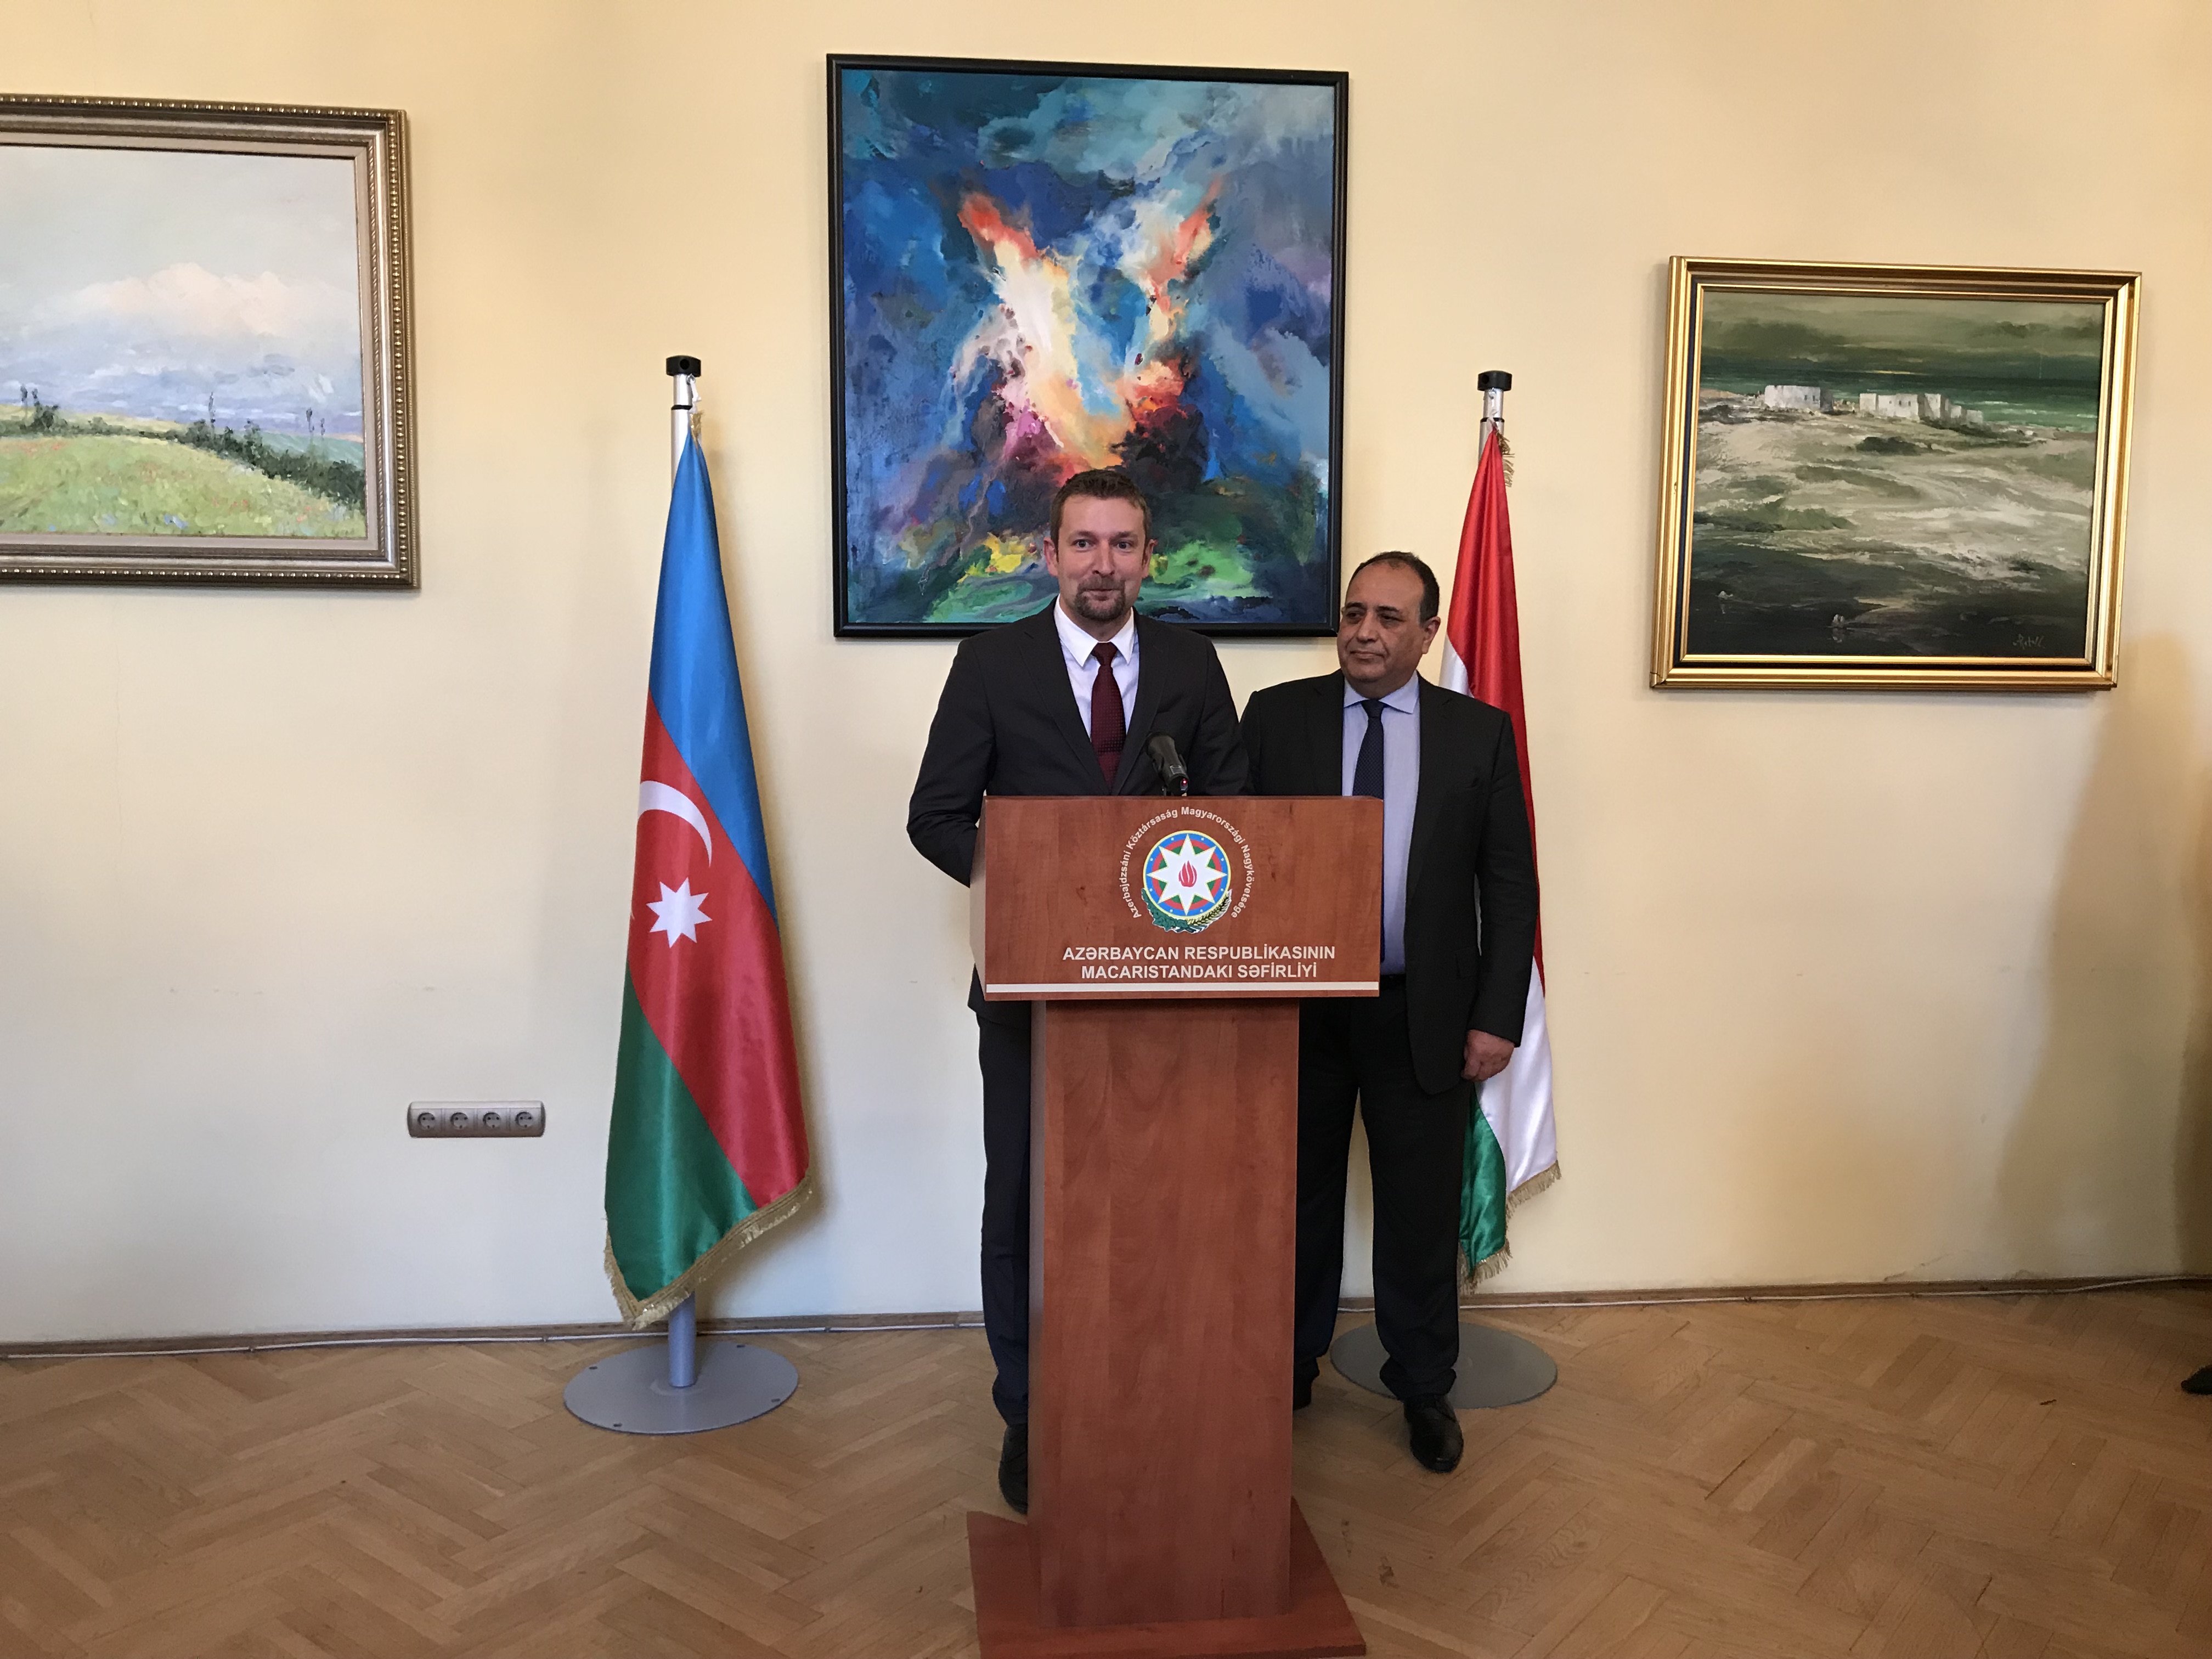 Der stellvertretende Staatssekretär Baranyi spricht beim Empfang der aserbaidschanischen Botschaft vor Diplomaten